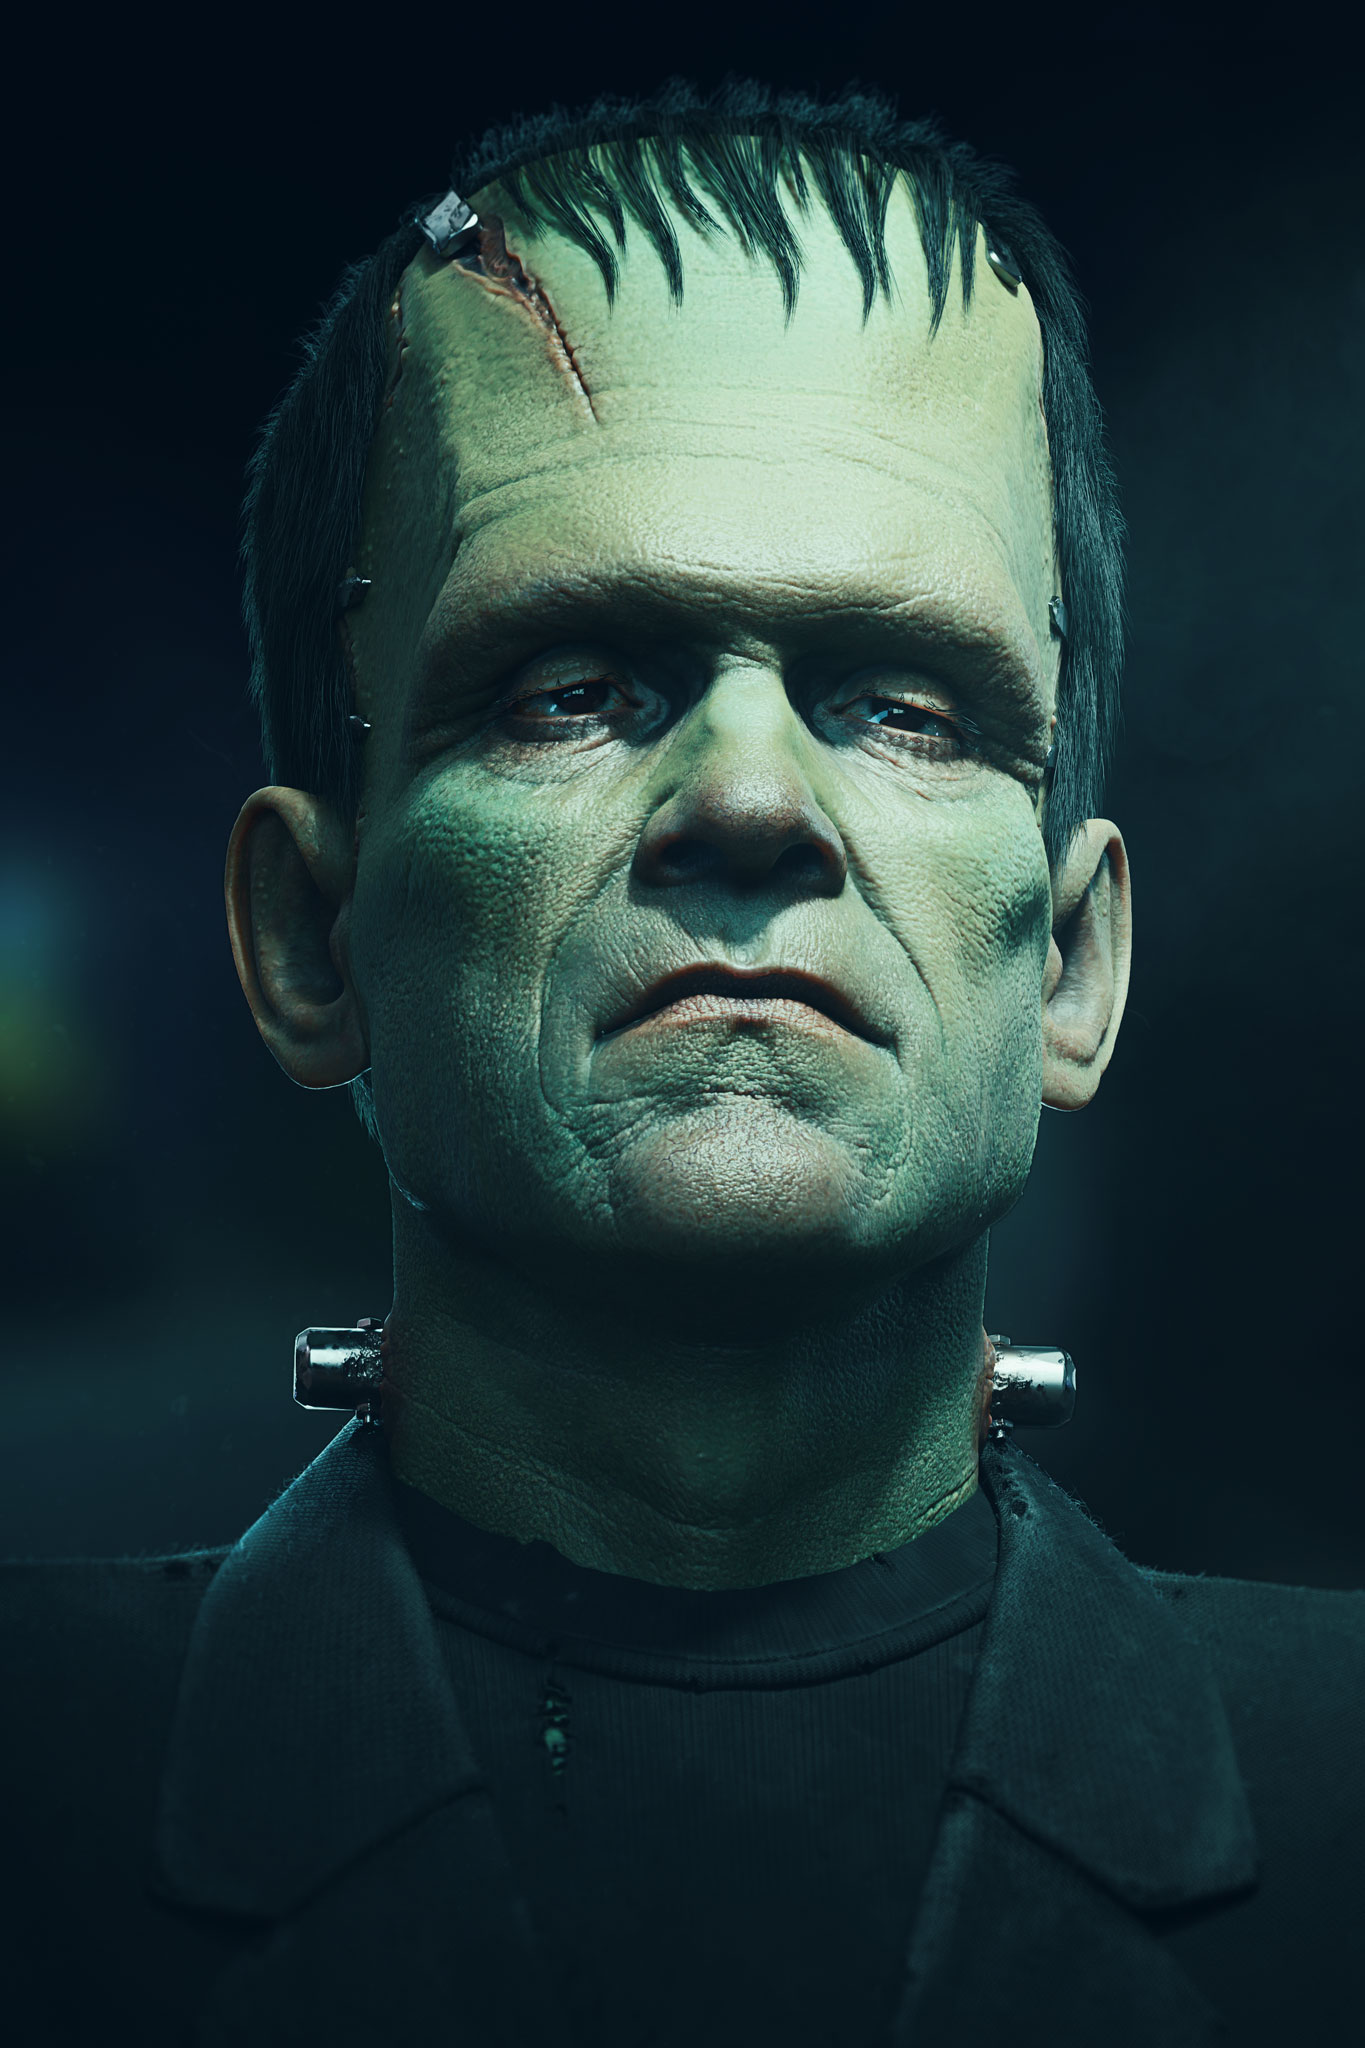 Frankensteins Monster - Finished Projects - Blender Artists Community